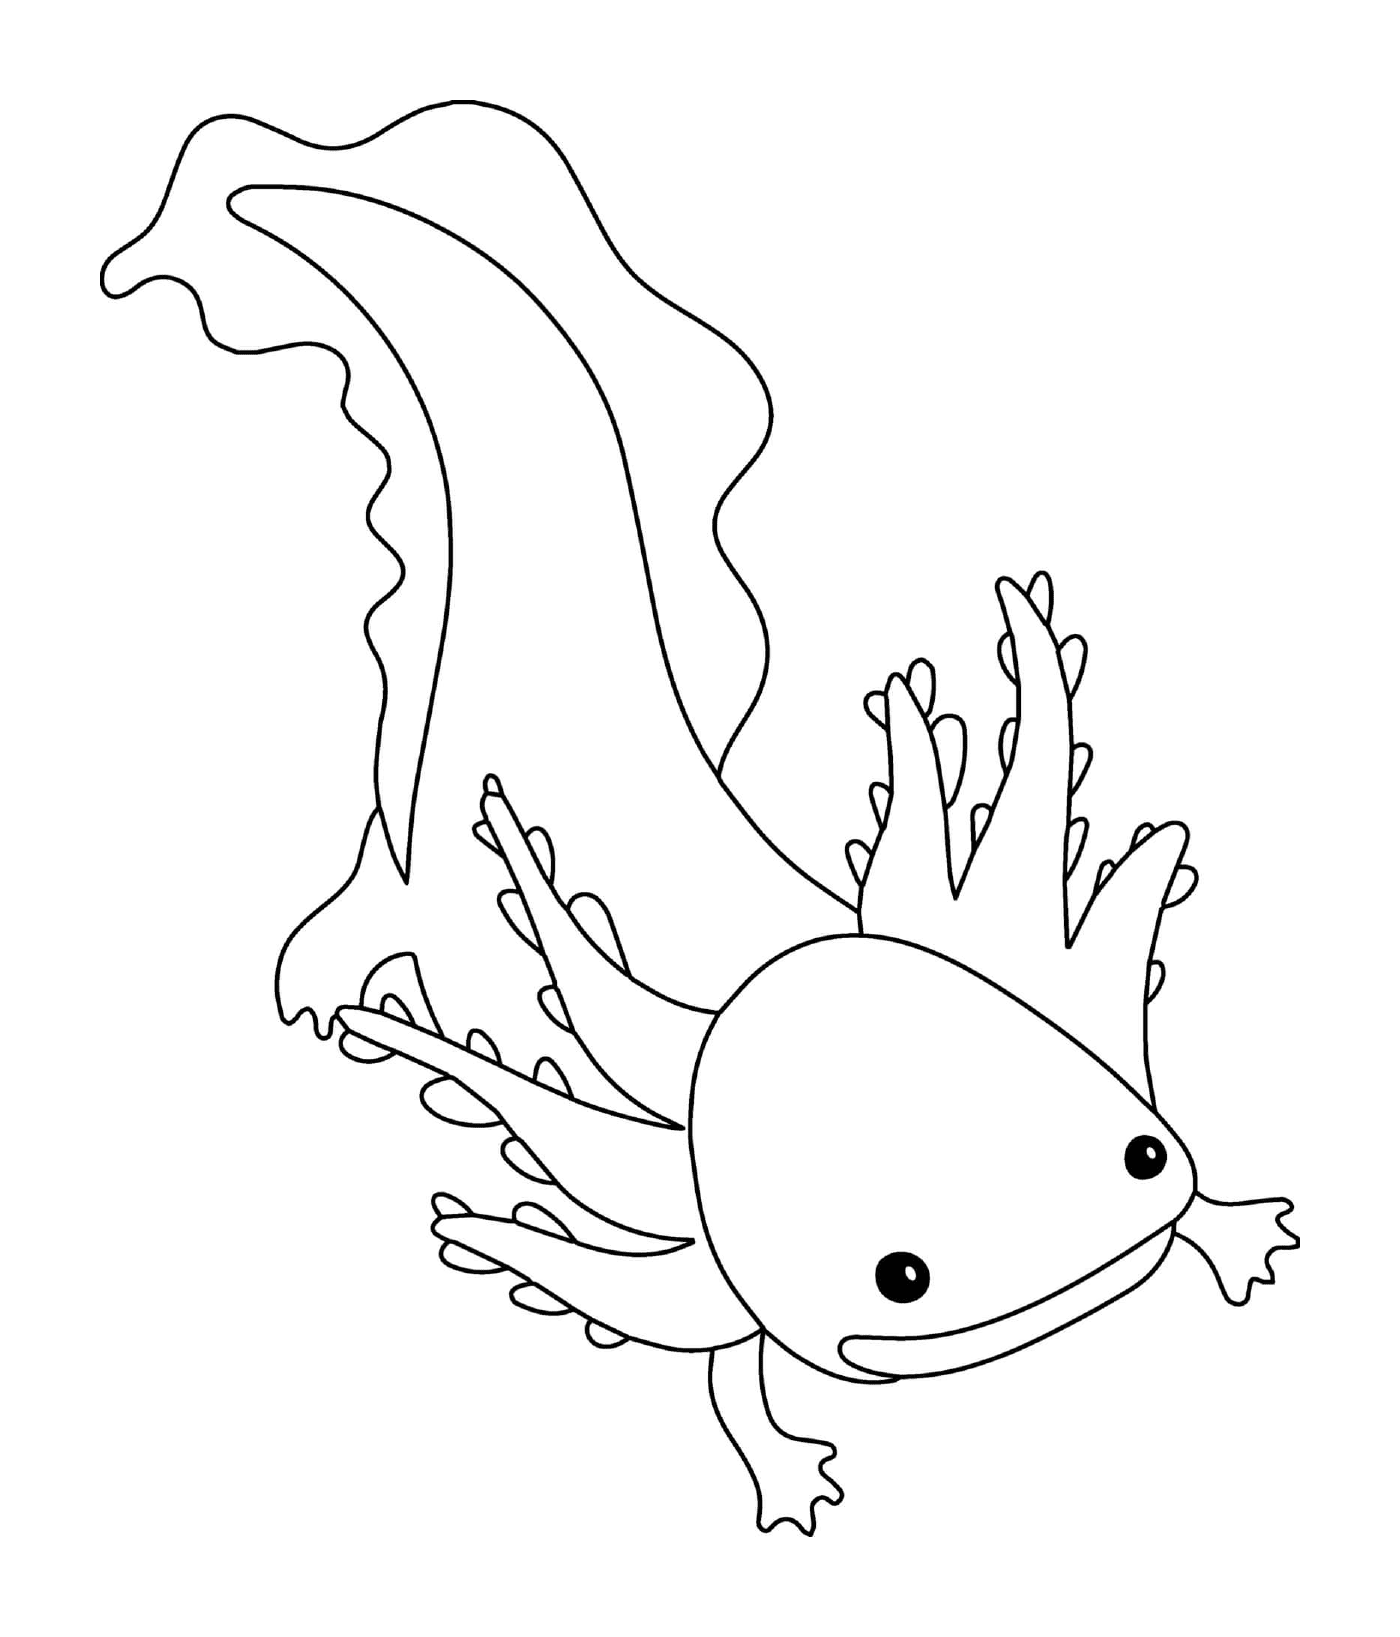 axolotl animal marin qui passe toute leur vie sans jamais se metamorphoser en adulte